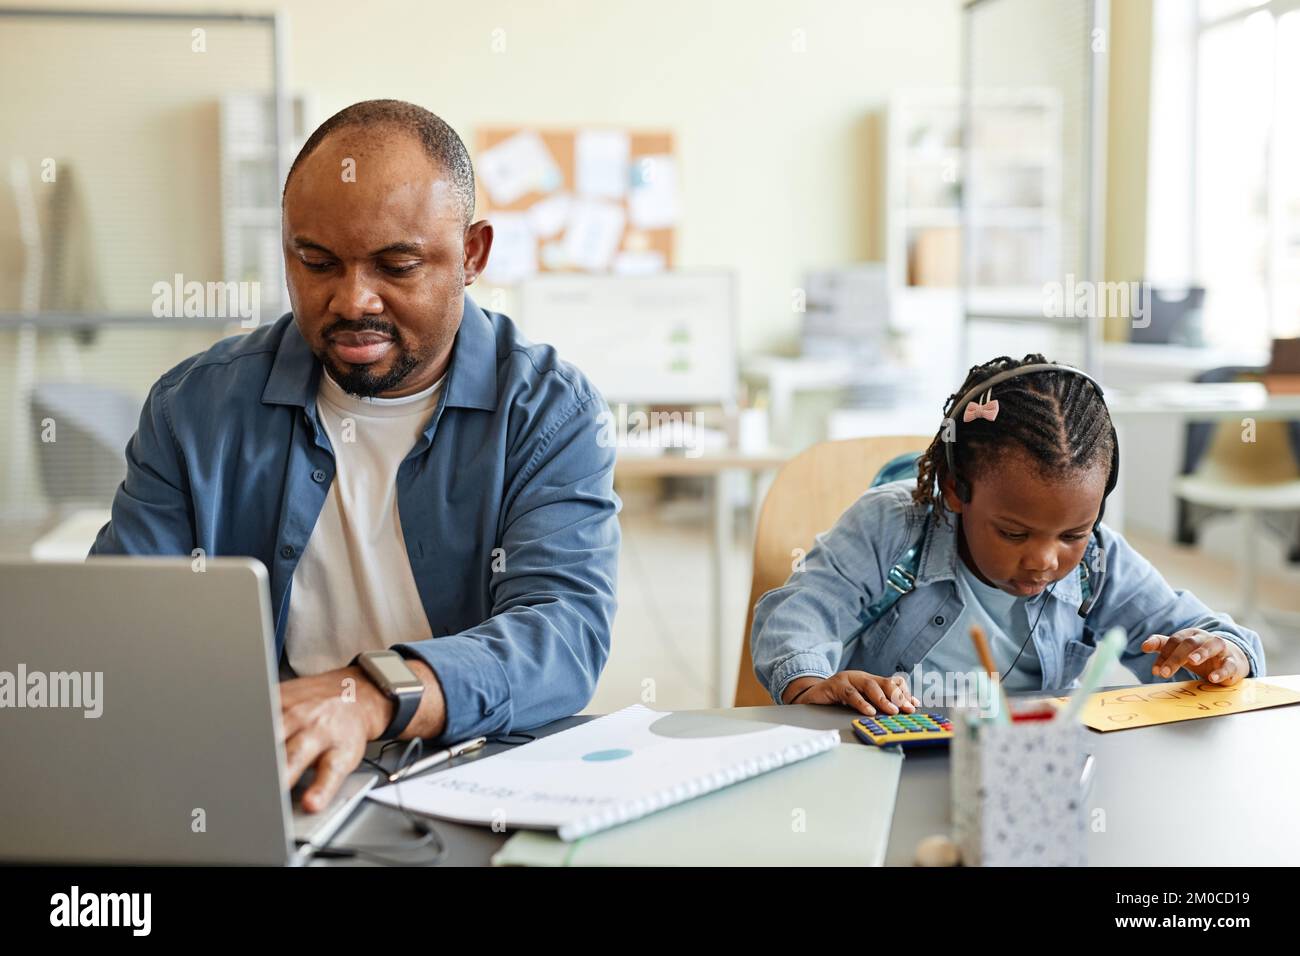 Vorderansicht eines schwarzen alleinerziehenden Vaters, der von zu Hause aus arbeitet, mit einem Kind, das mit dem Taschenrechner neben ihm spielt Stockfoto